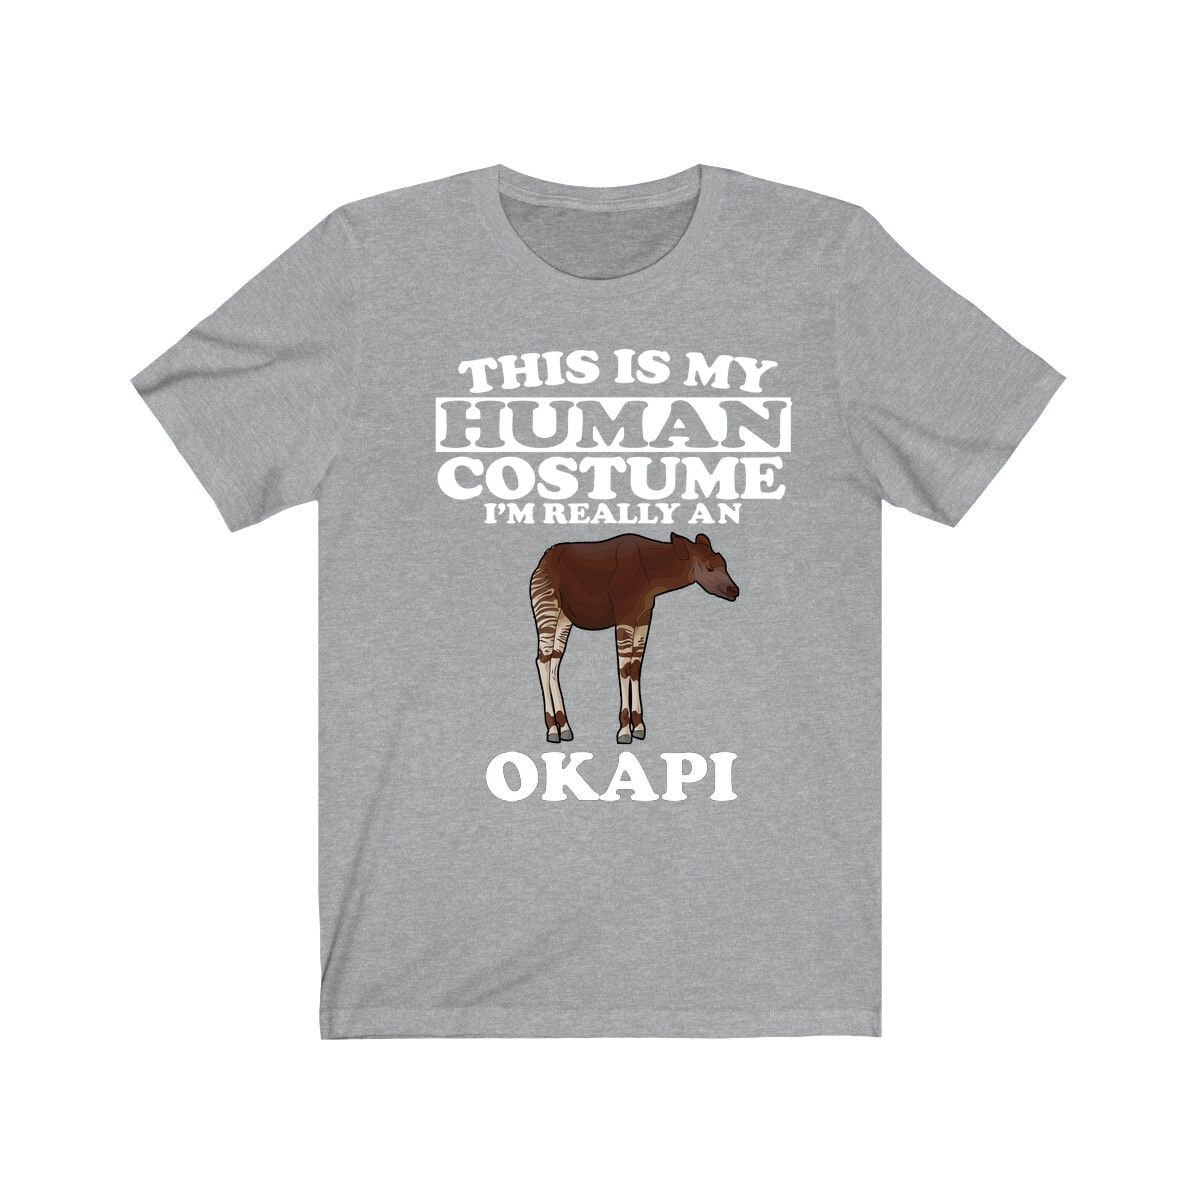 This is My Human Costume I'm Really an Okapi Shirt, Okapi Lover Shirt, Okapi  Shirt, Okapi Funny Gift, Animal Adult Kids 